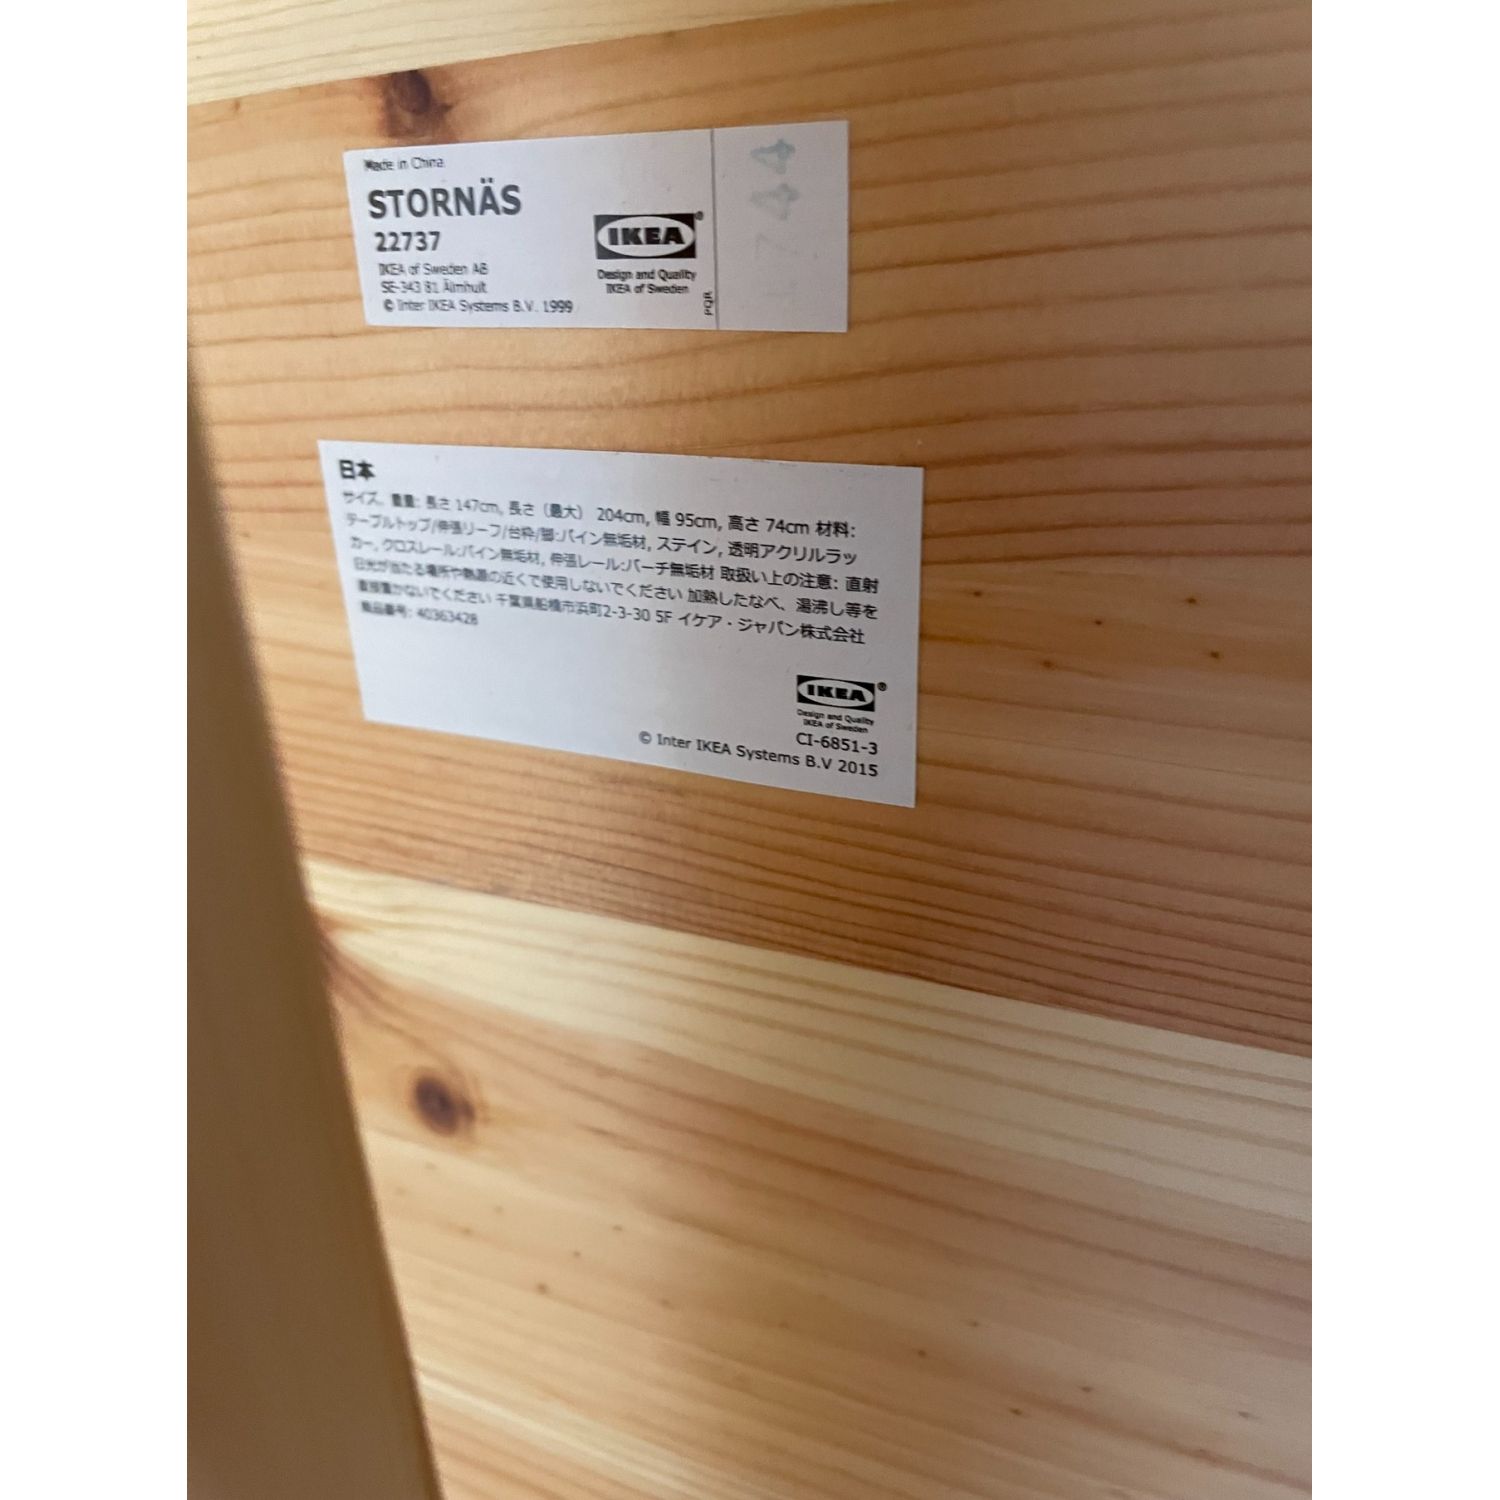 IKEA (イケア) 伸縮式ダイニングテーブル ナチュラル ストールネス